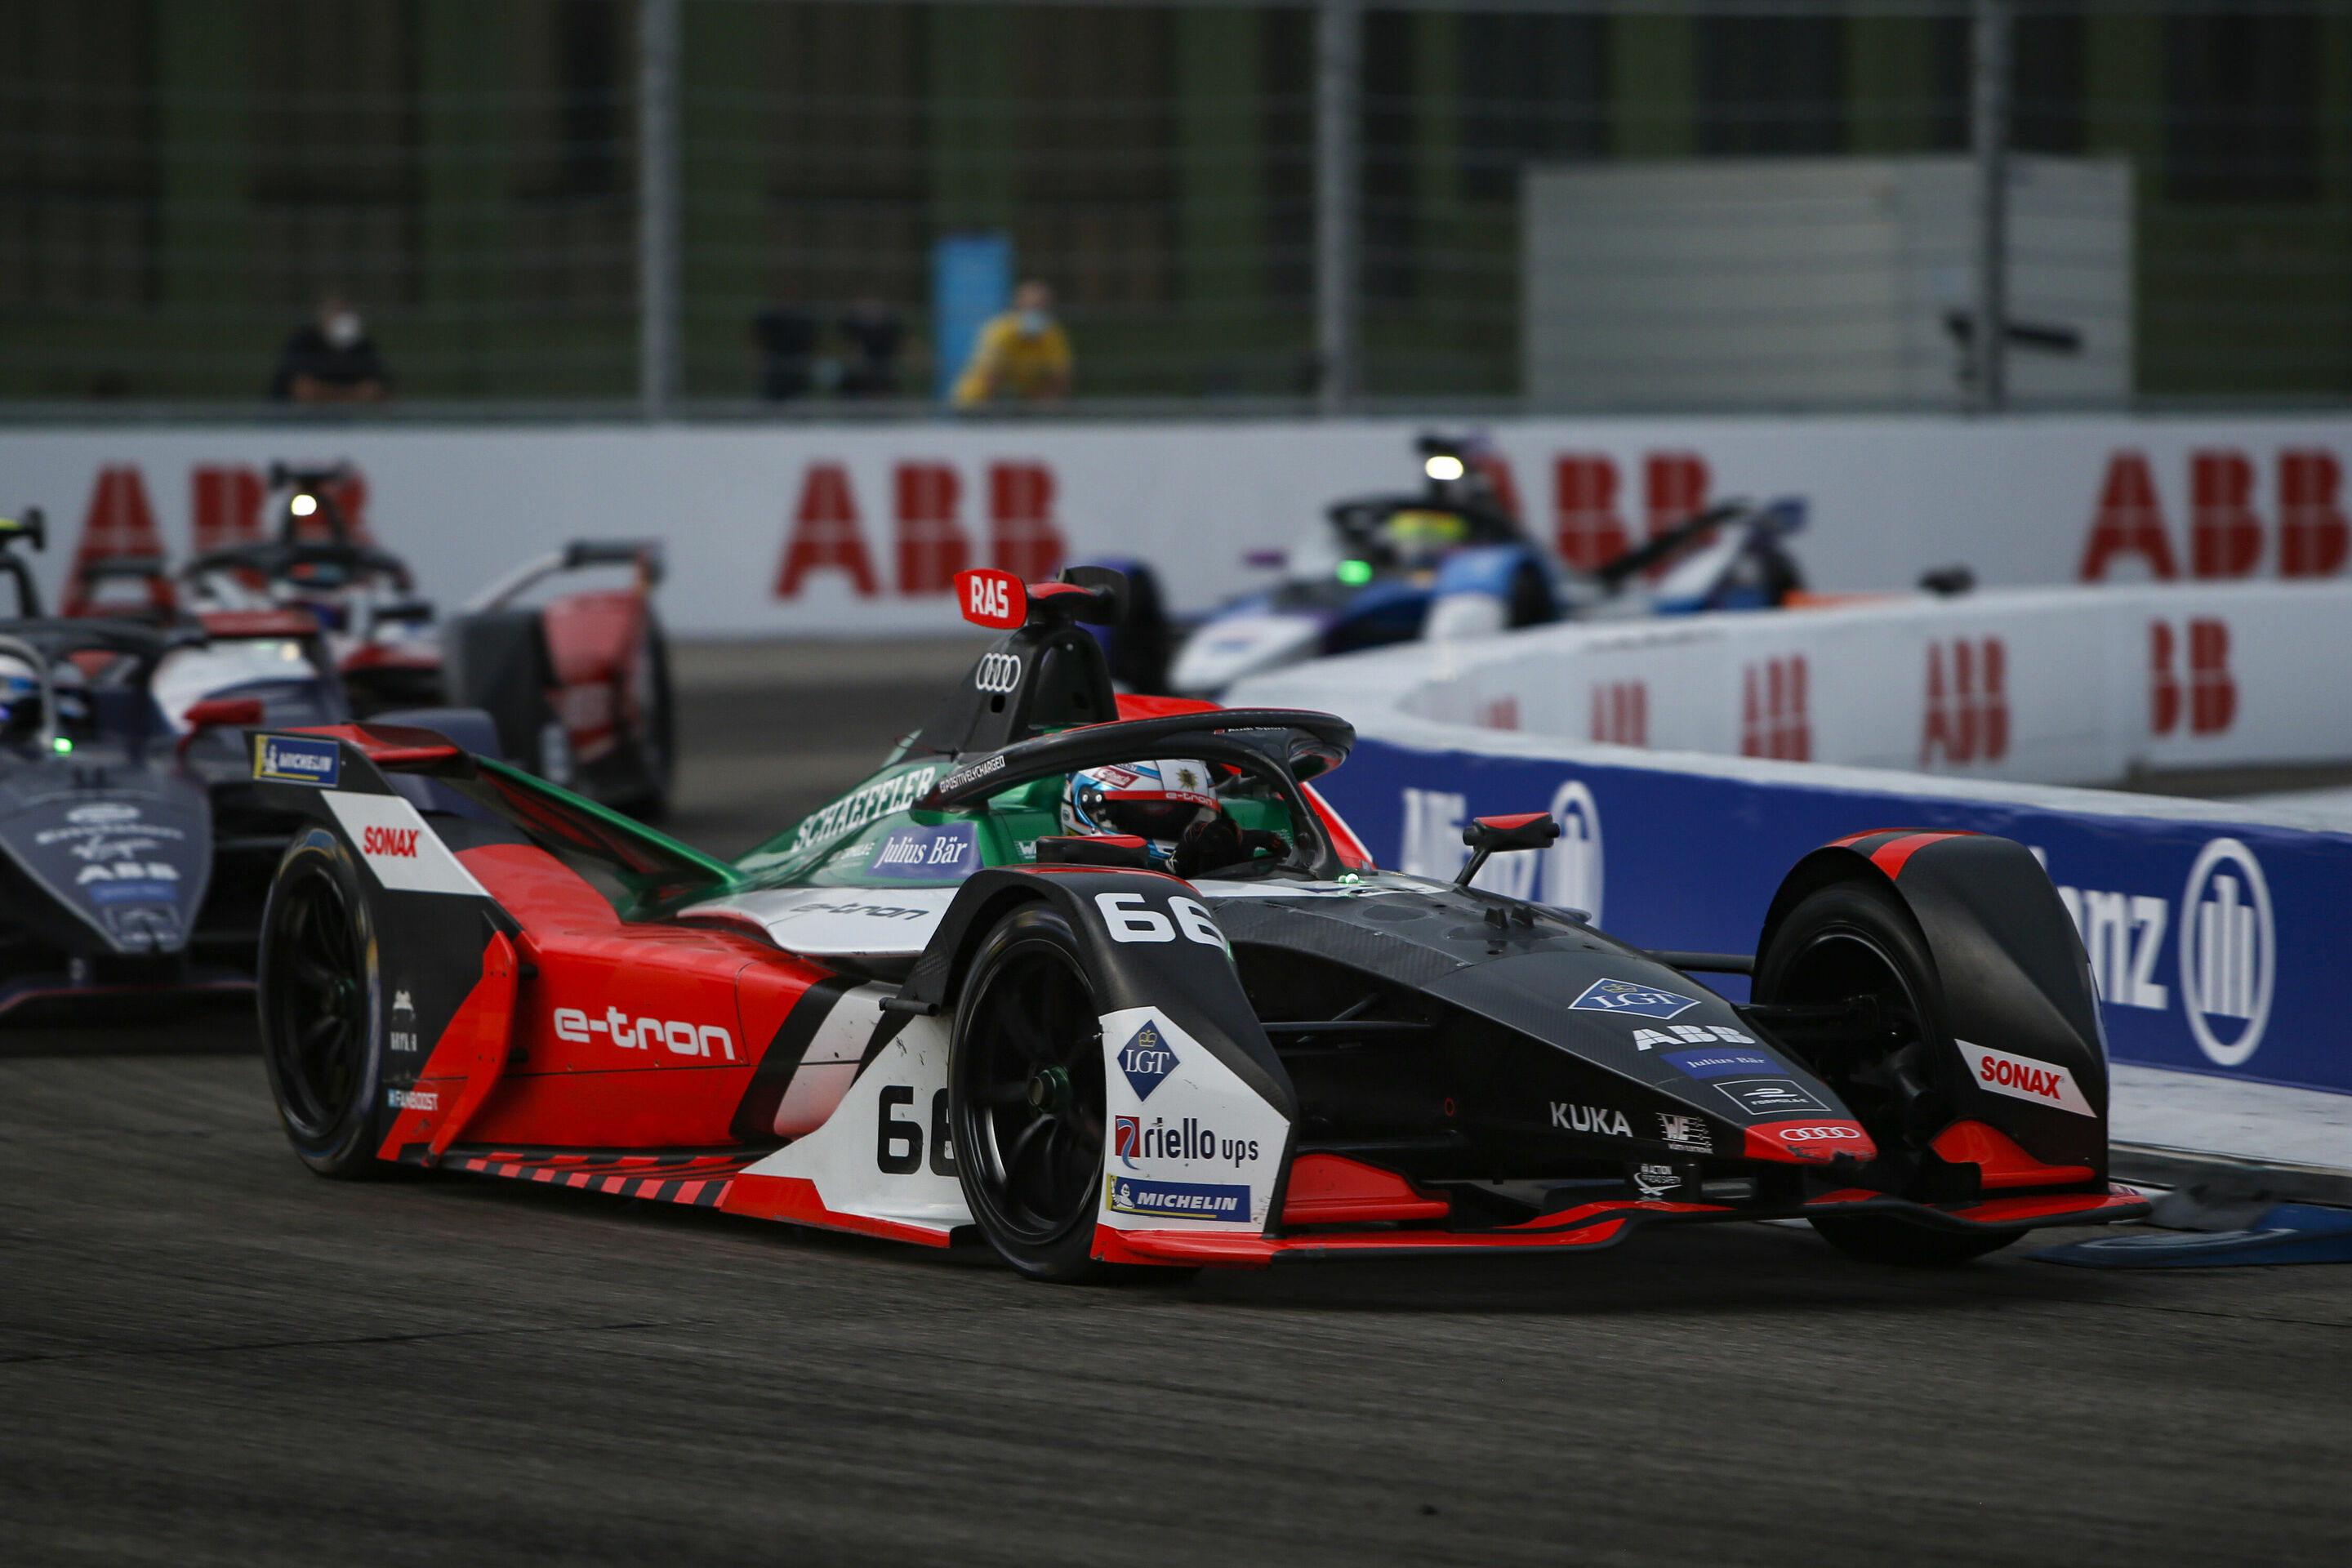 Formula E, Berlin E-Prix 2020